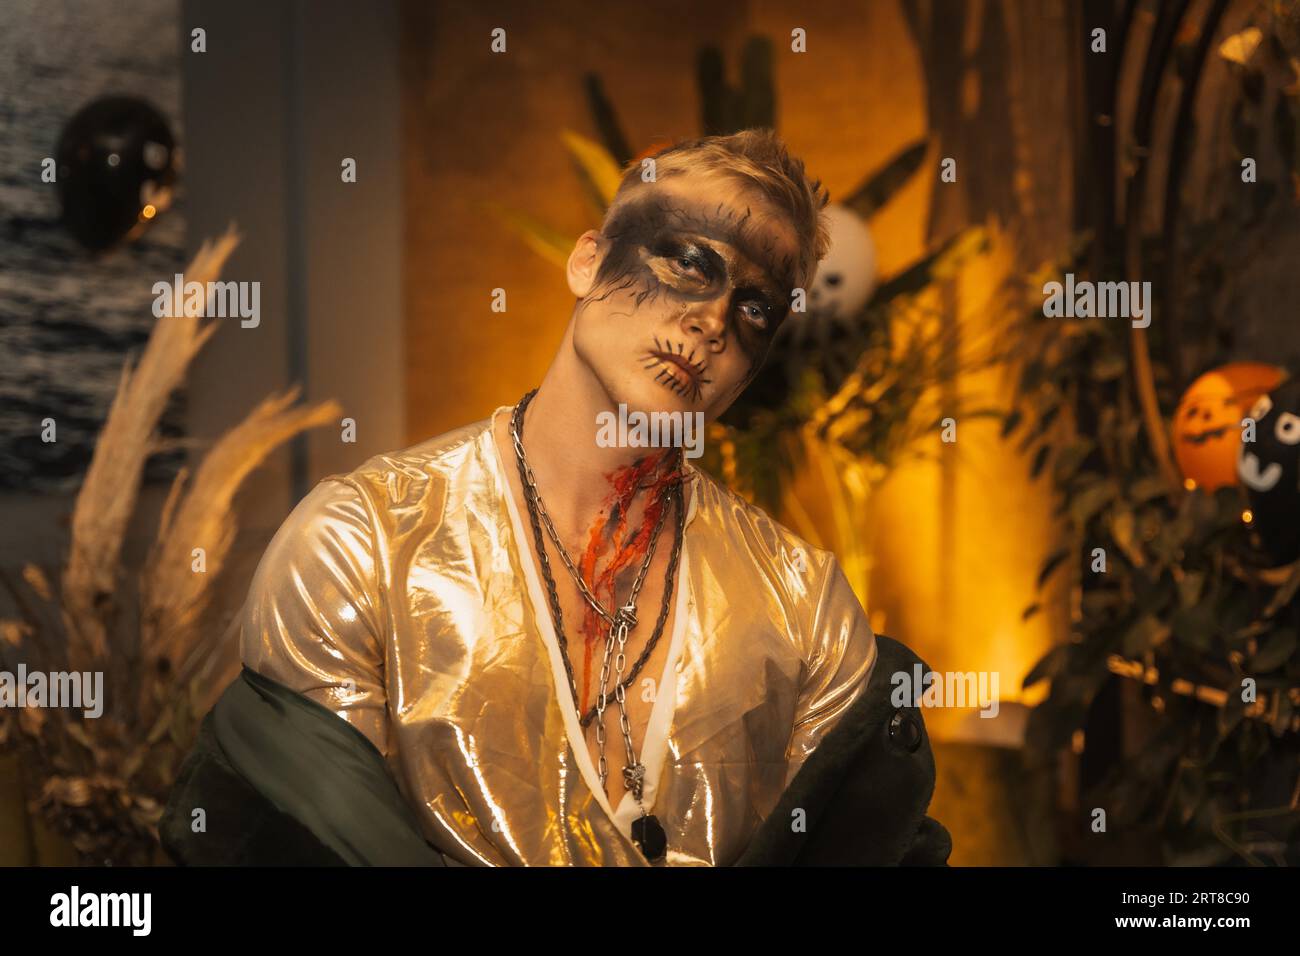 Fête d'Halloween avec des amis dans une discothèque, portrait d'un homme blond en maquillage zombie Banque D'Images